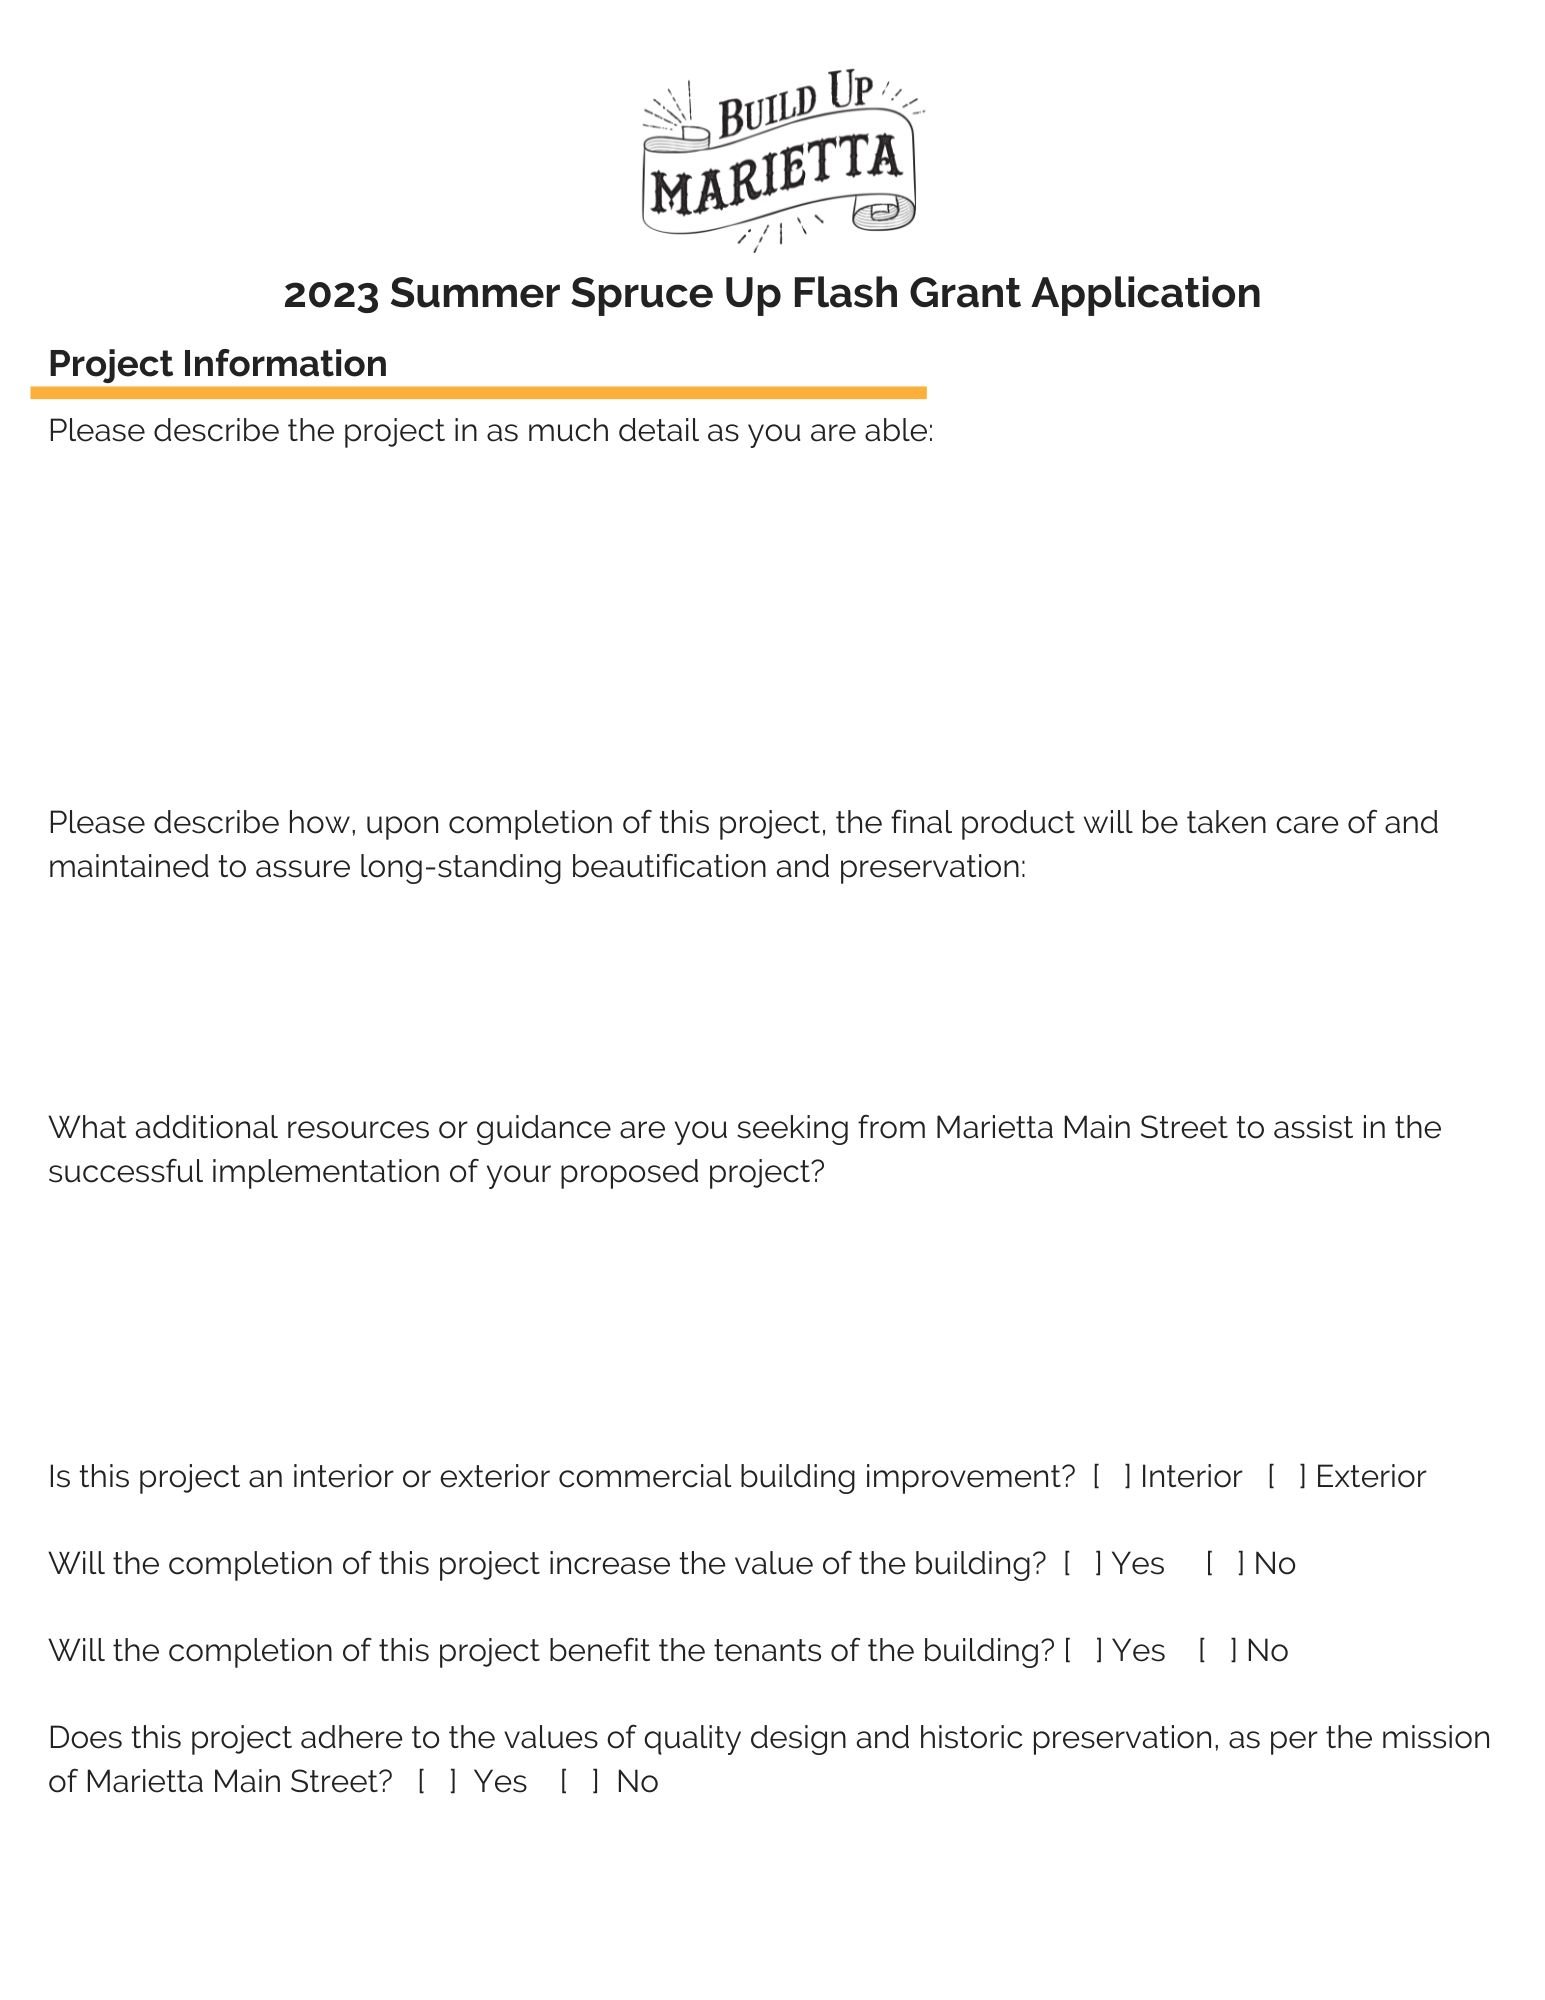 Build Up Marietta - 2023 Summer Flash Grant (3).jpg